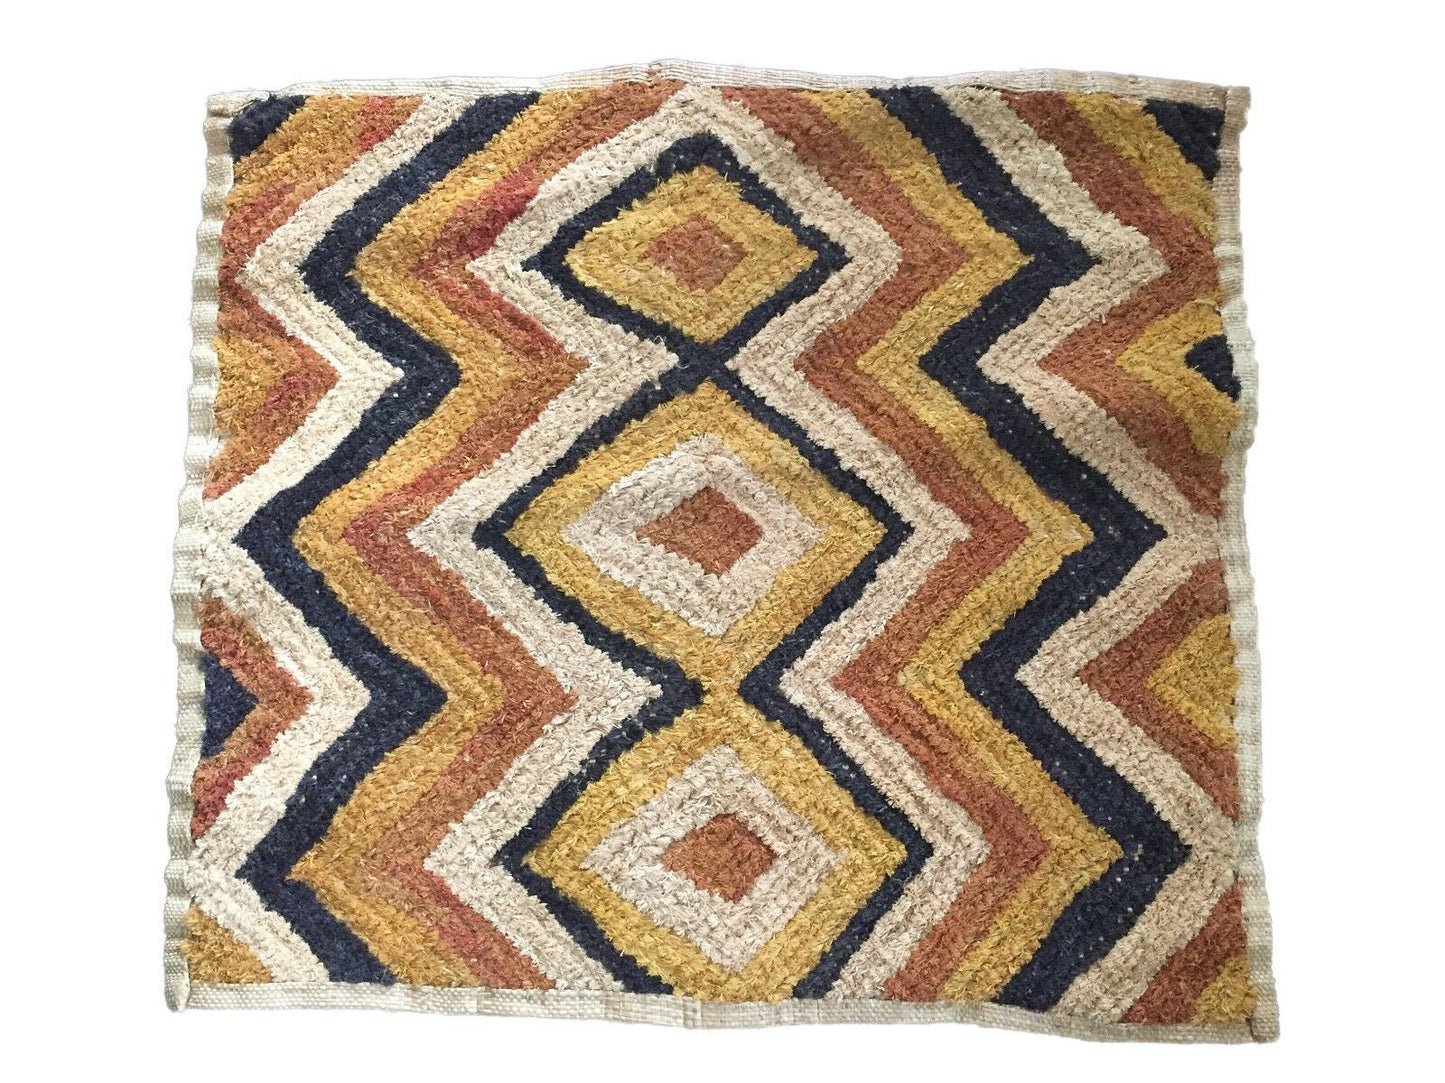 #1590 Superb African Kuba Kasai Velvet Raffia Textile Zaire 24.5 "by 22.25"